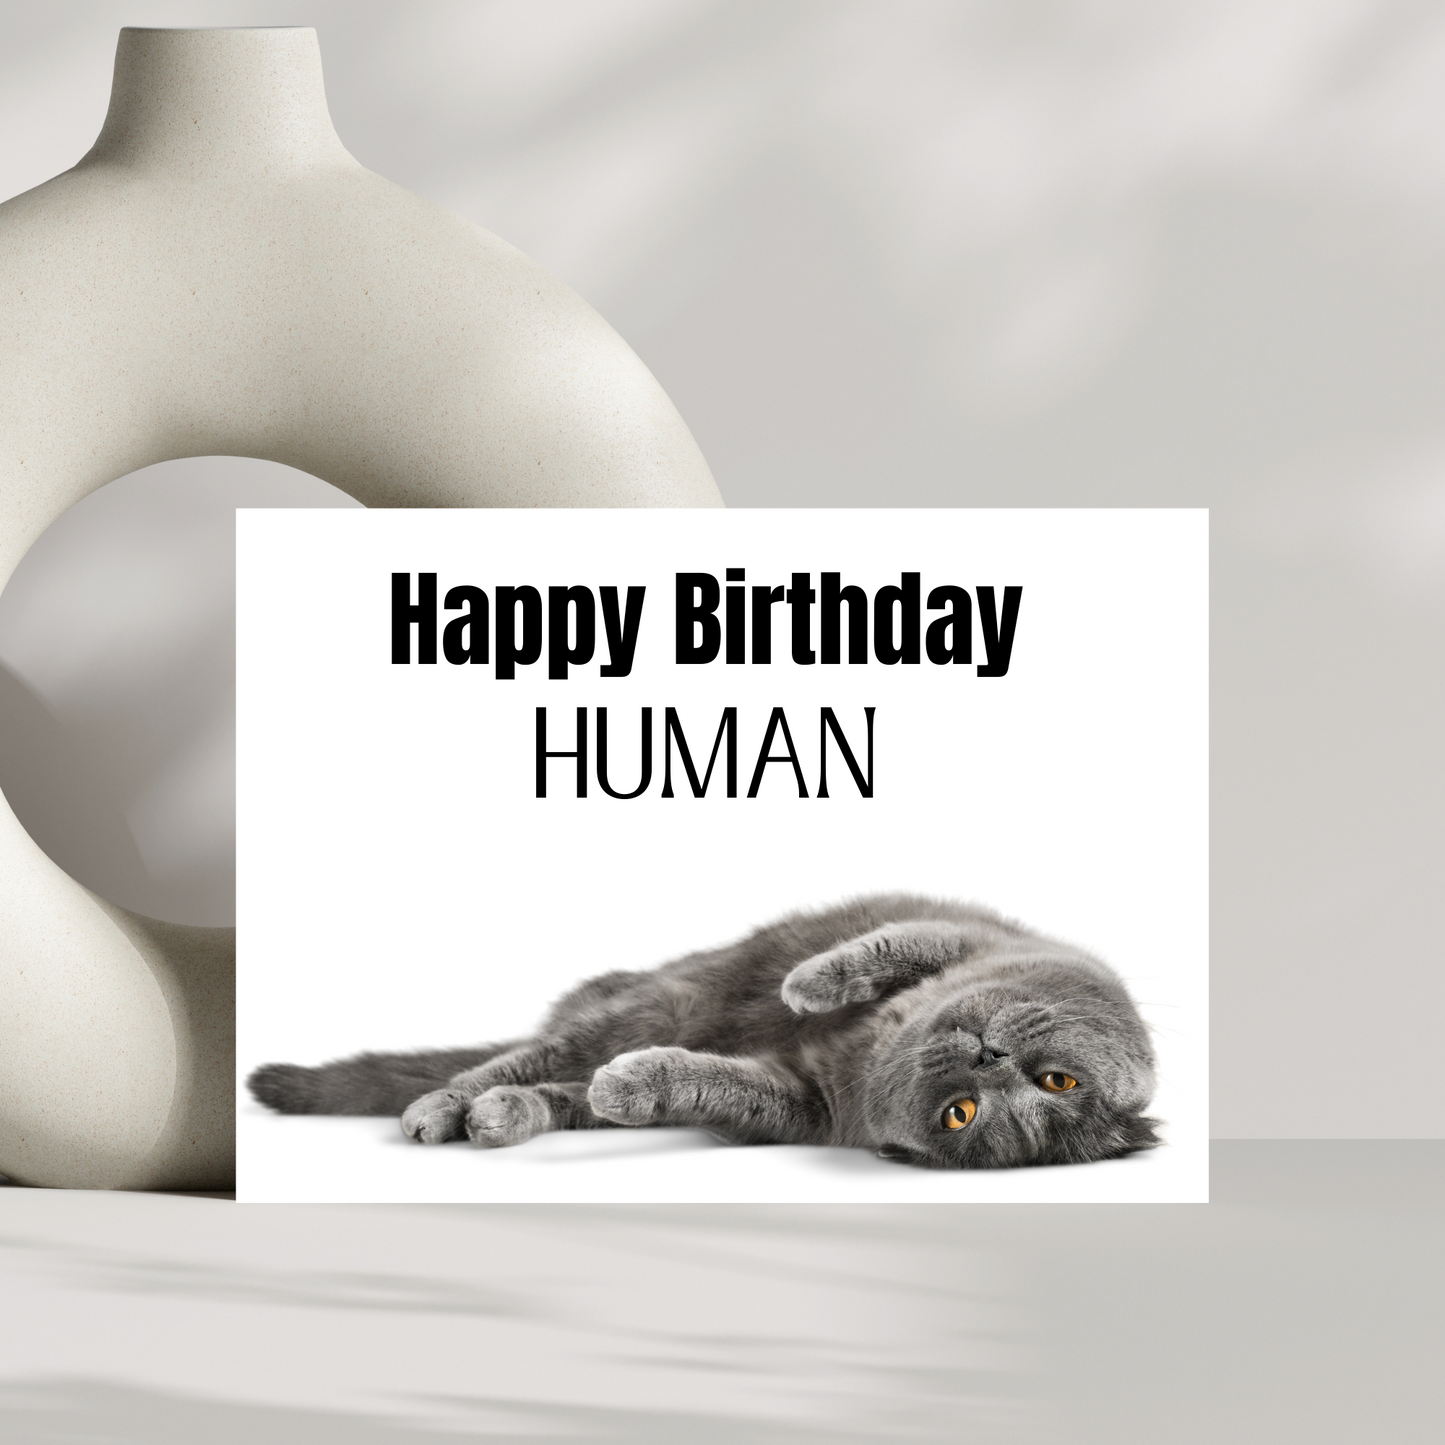 Happy Birthday Human - cat birthday card